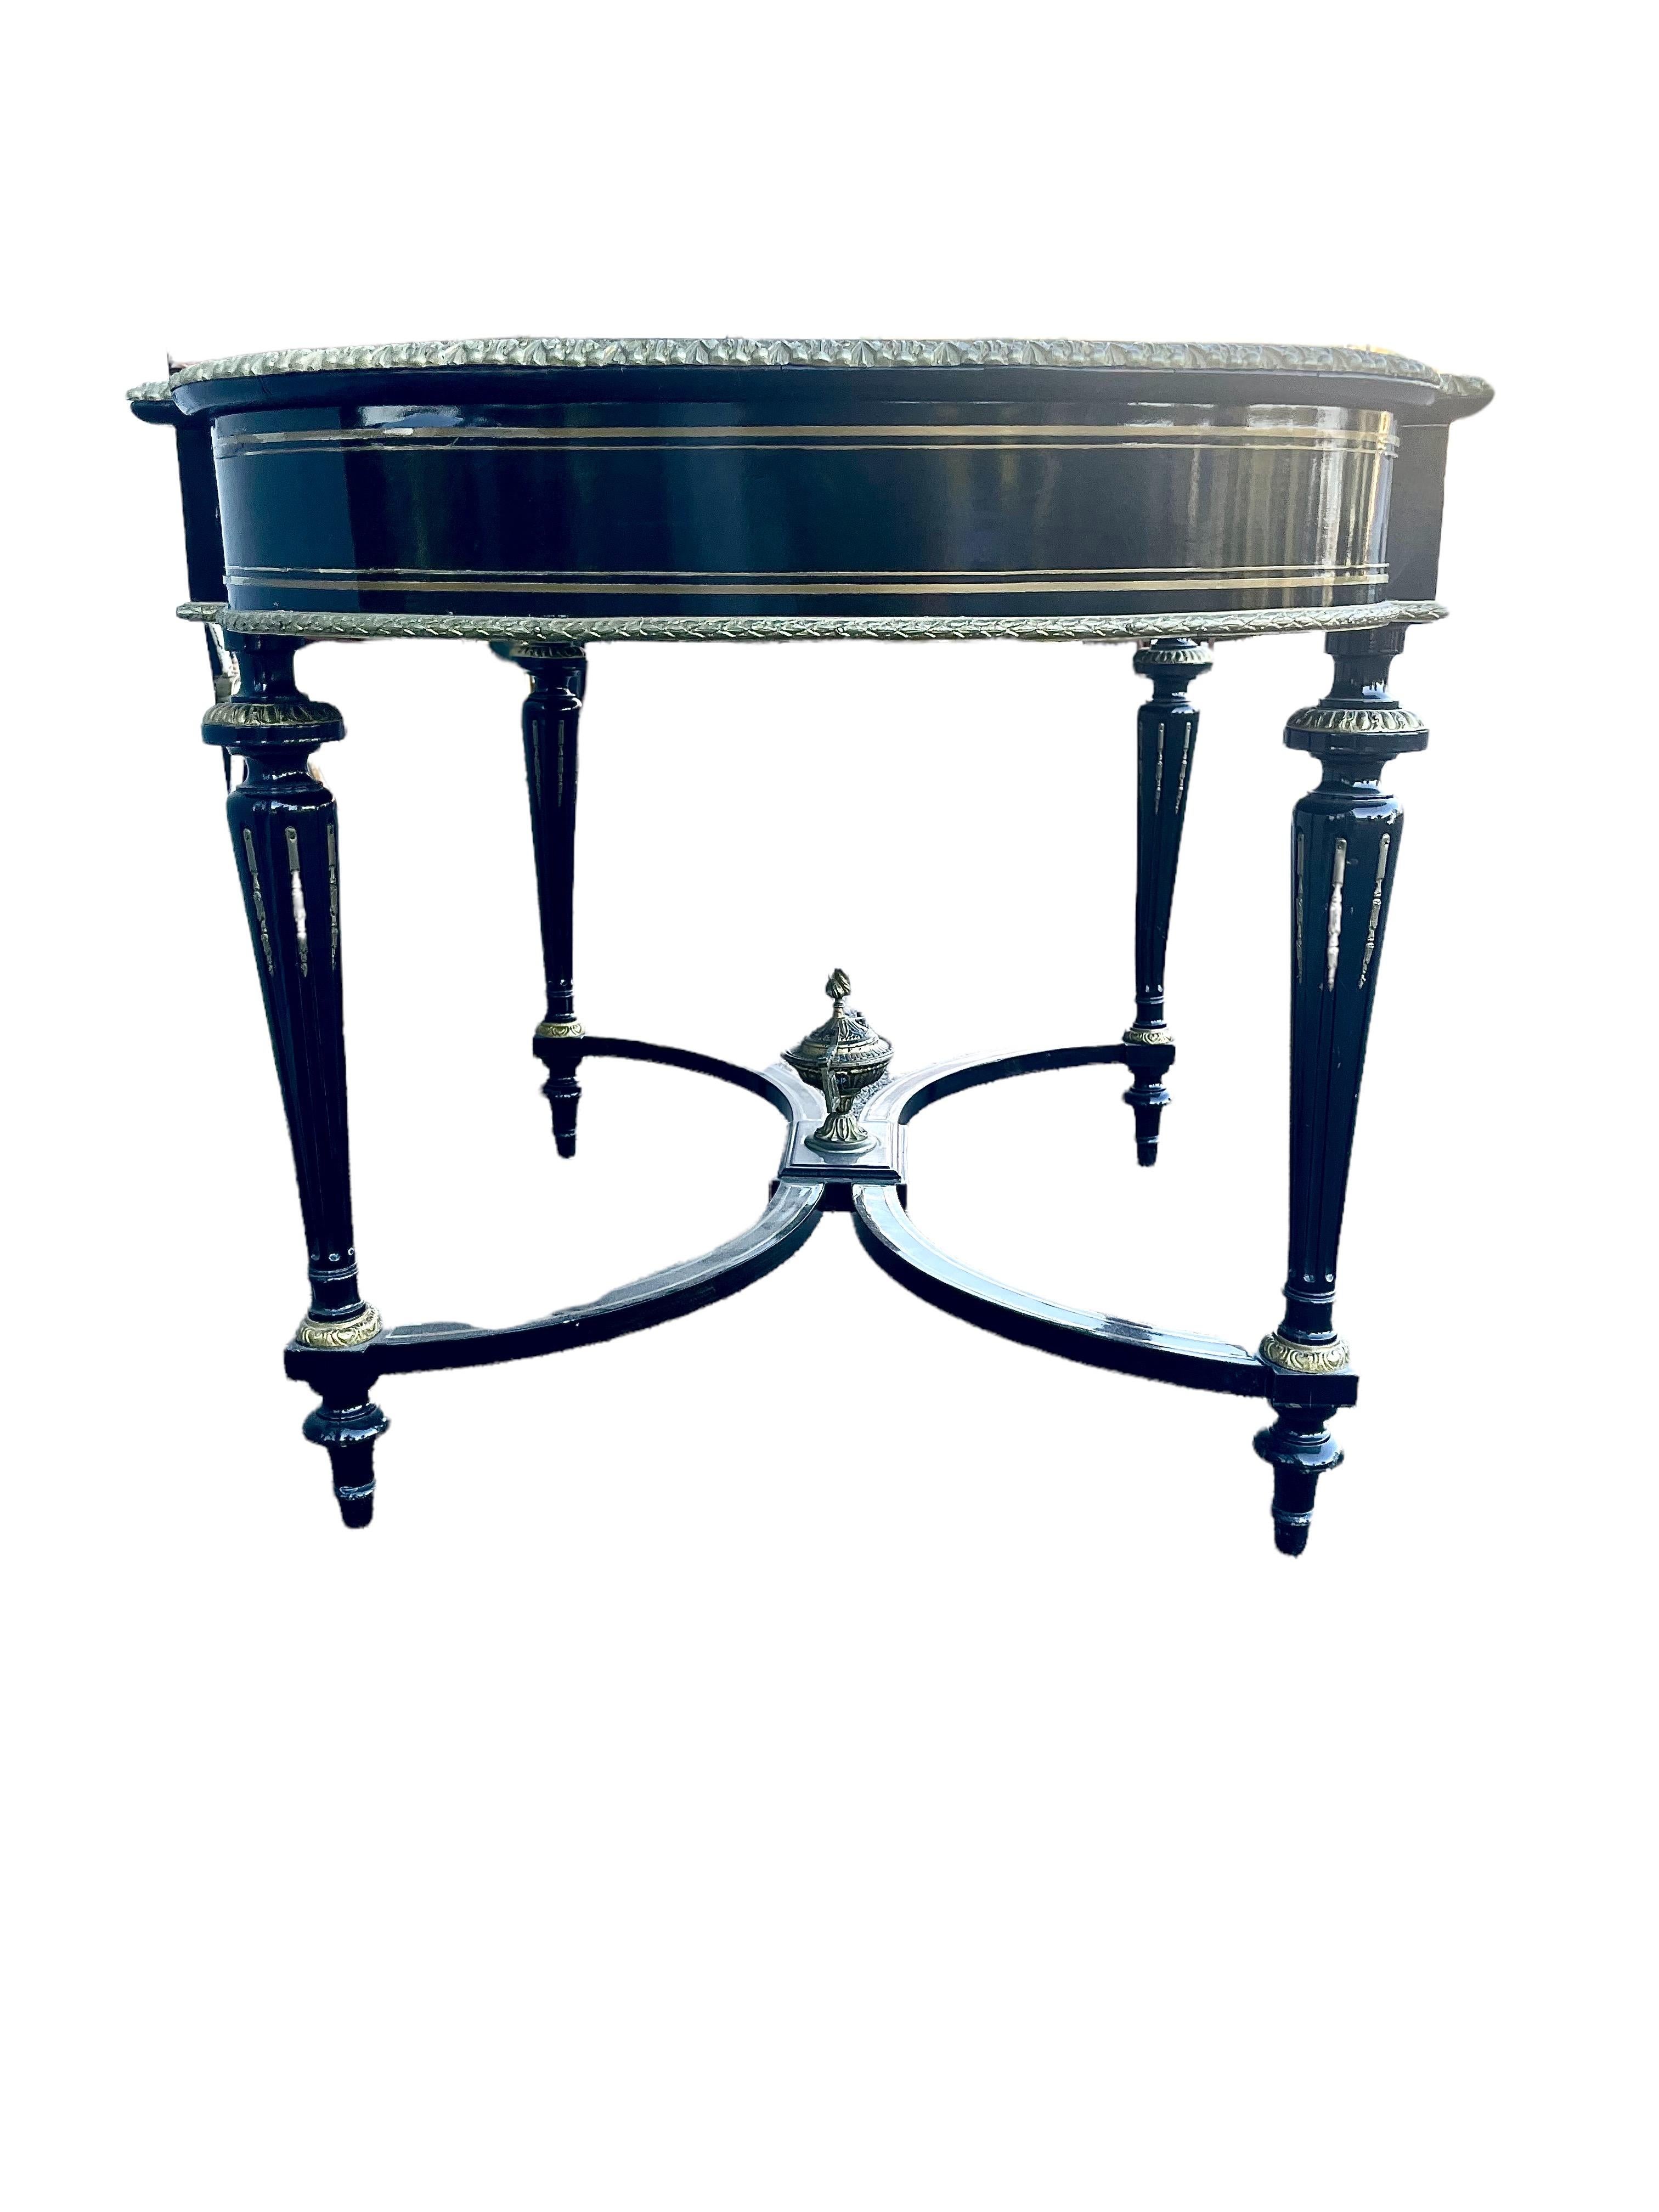 Imposante table de milieu Napoléon III en bois fruitier ébonisé, de forme rectangulaire, avec des côtés arrondis. 
Son plateau orné, bordé sur tout le pourtour d'une frise en bronze doré et de deux autres bandes intérieures, présente en son centre